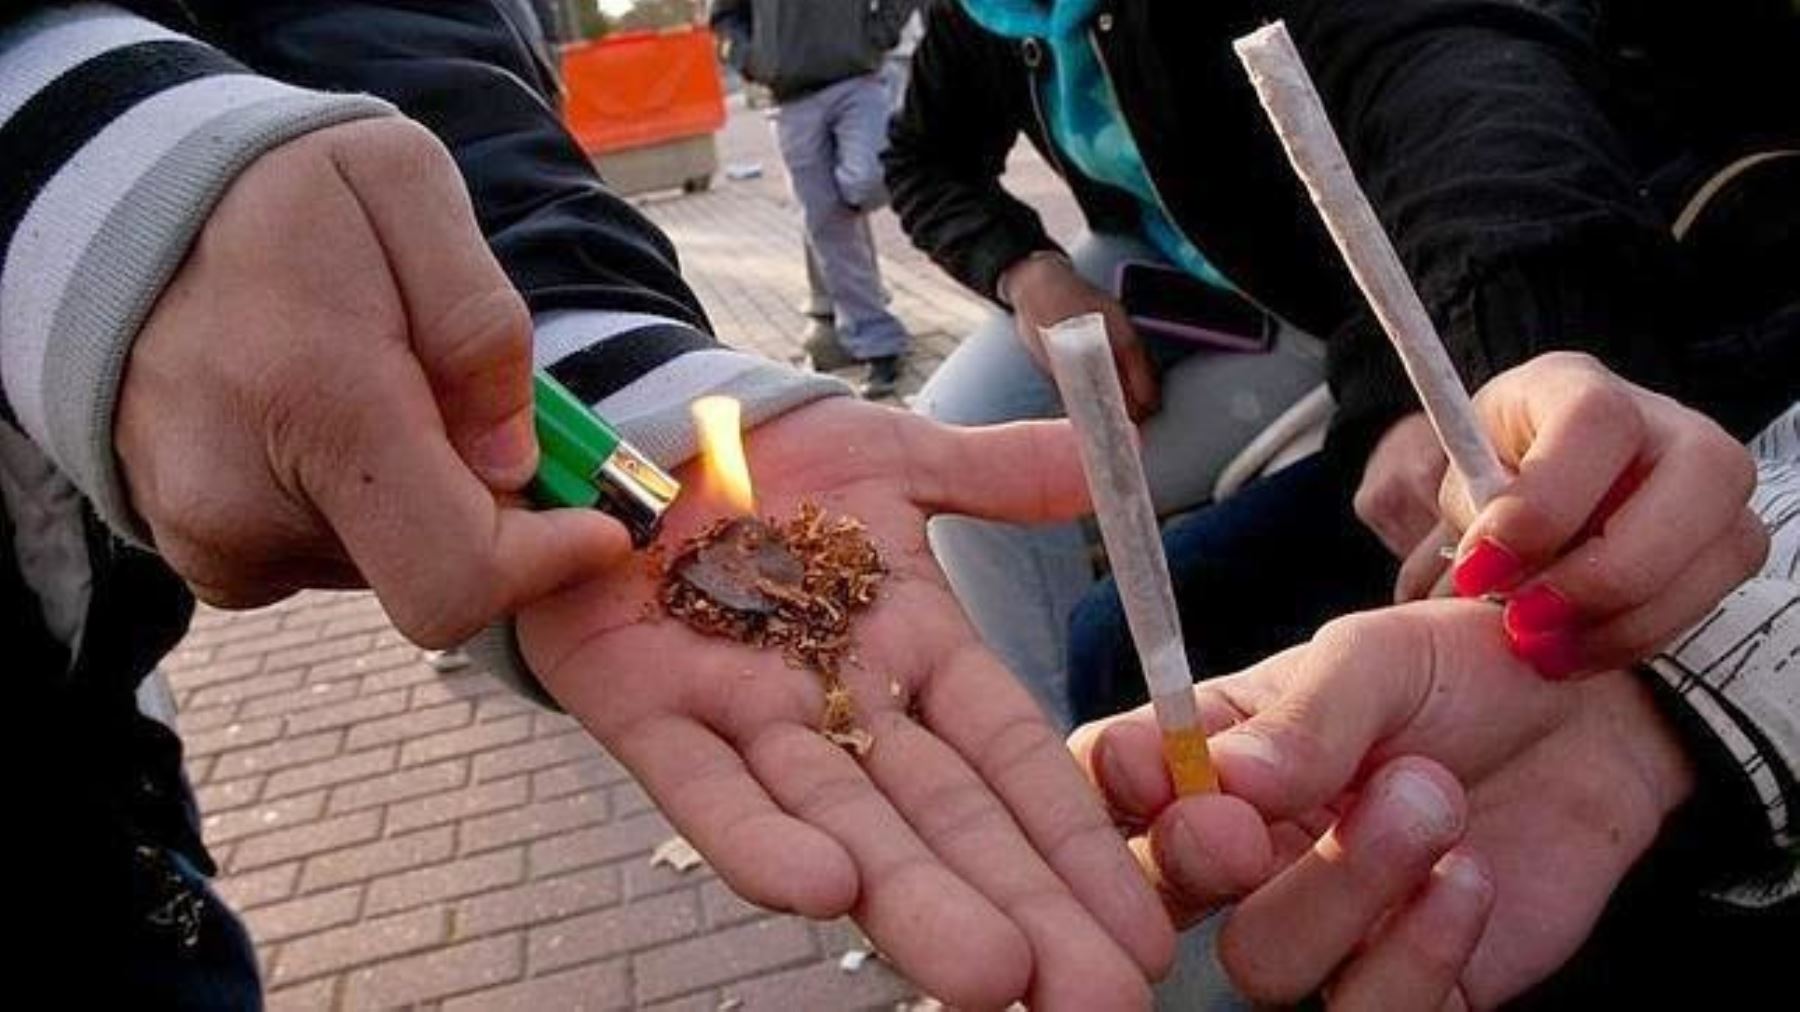 Devida implementa nuevo servicio para ayudar a jóvenes a alejarse de las drogas. Foto: INTERNET/Medios